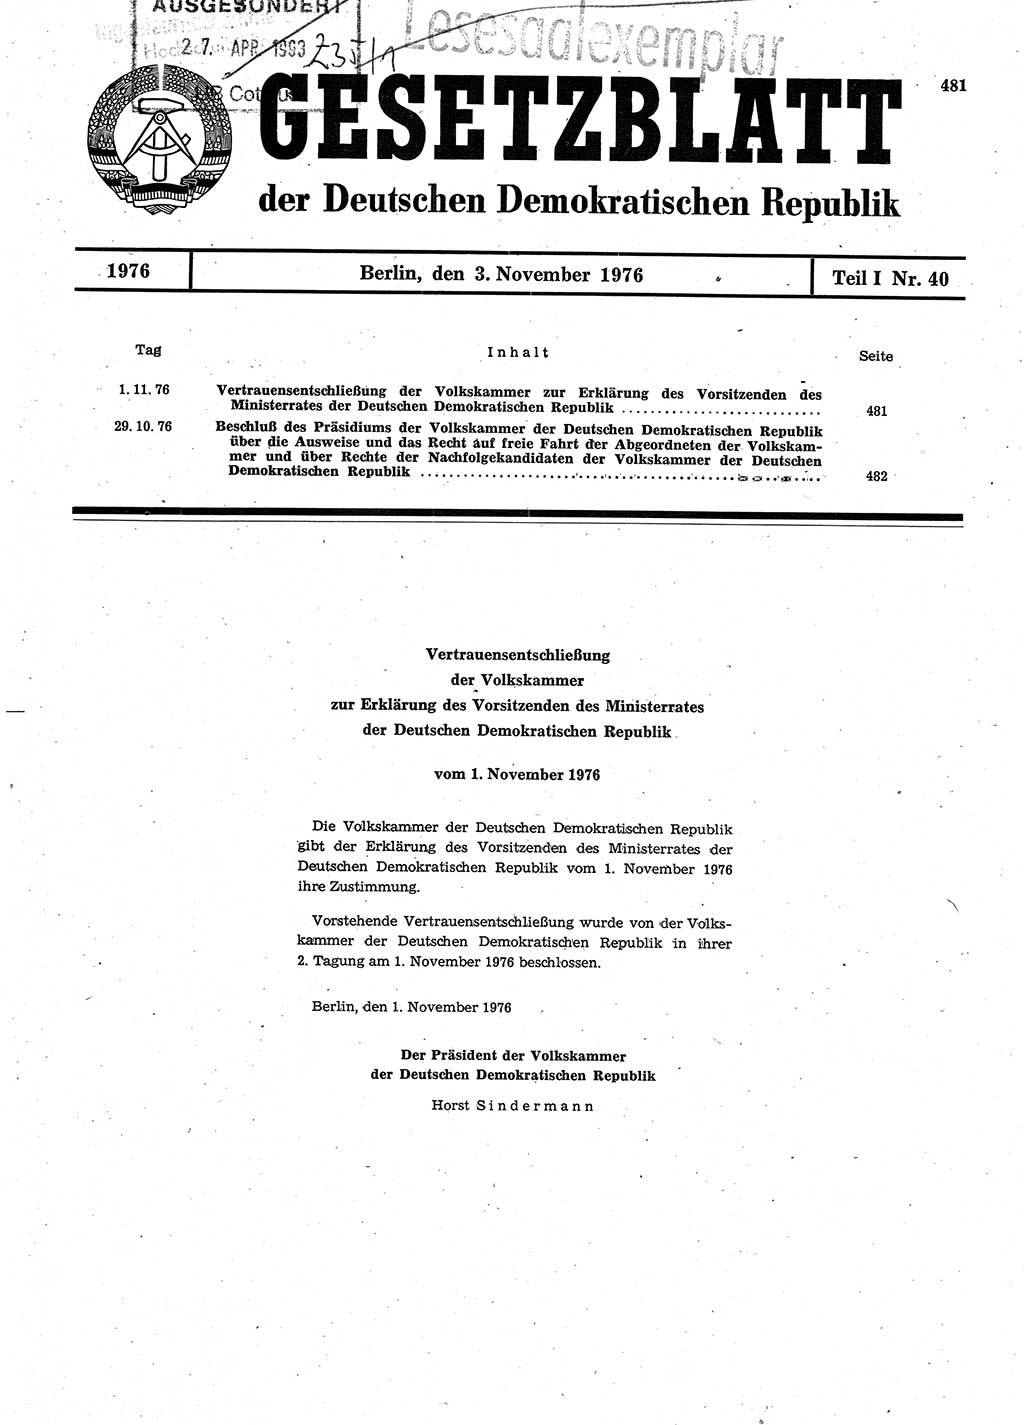 Gesetzblatt (GBl.) der Deutschen Demokratischen Republik (DDR) Teil Ⅰ 1976, Seite 481 (GBl. DDR Ⅰ 1976, S. 481)